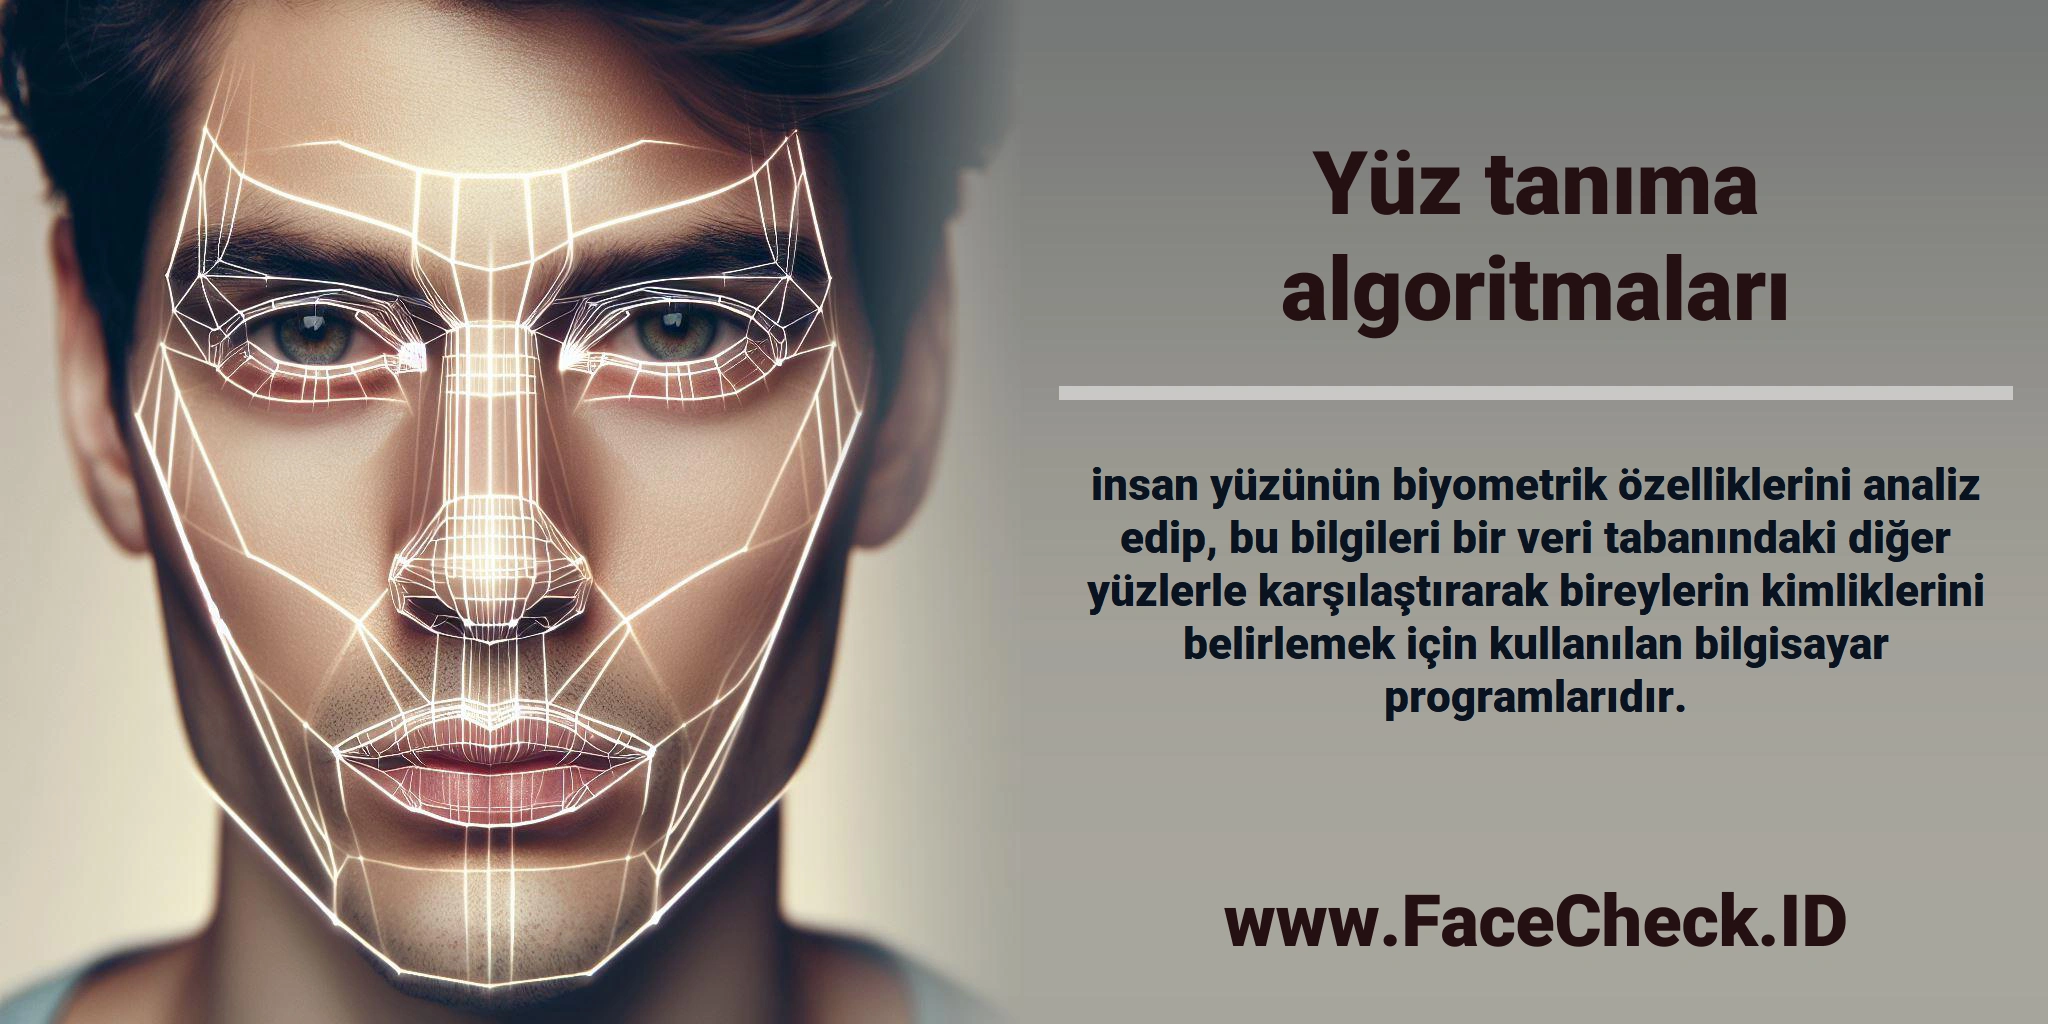 <b>Yüz tanıma algoritmaları</b> insan yüzünün biyometrik özelliklerini analiz edip, bu bilgileri bir veri tabanındaki diğer yüzlerle karşılaştırarak bireylerin kimliklerini belirlemek için kullanılan bilgisayar programlarıdır.